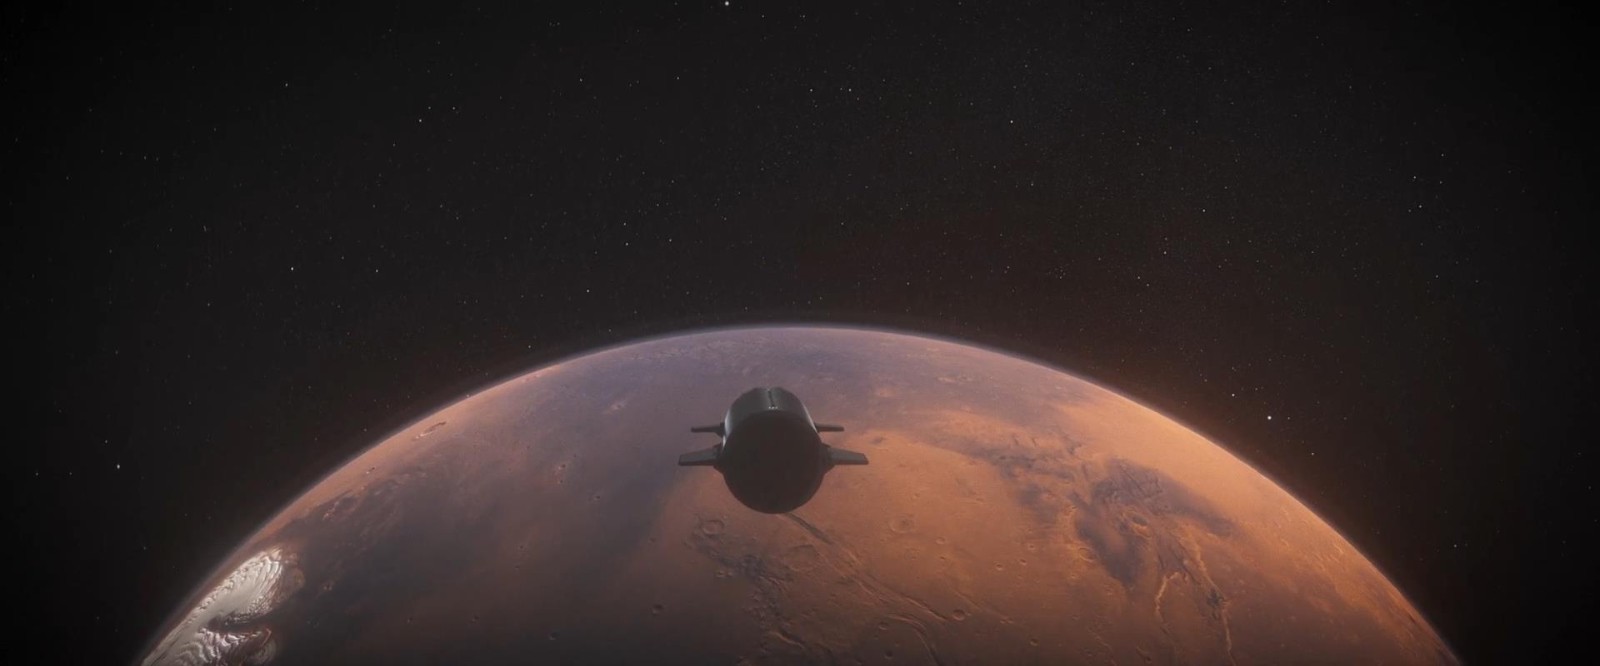 SpaceX星舰新宣传片 画面超震撼！将建造火星城